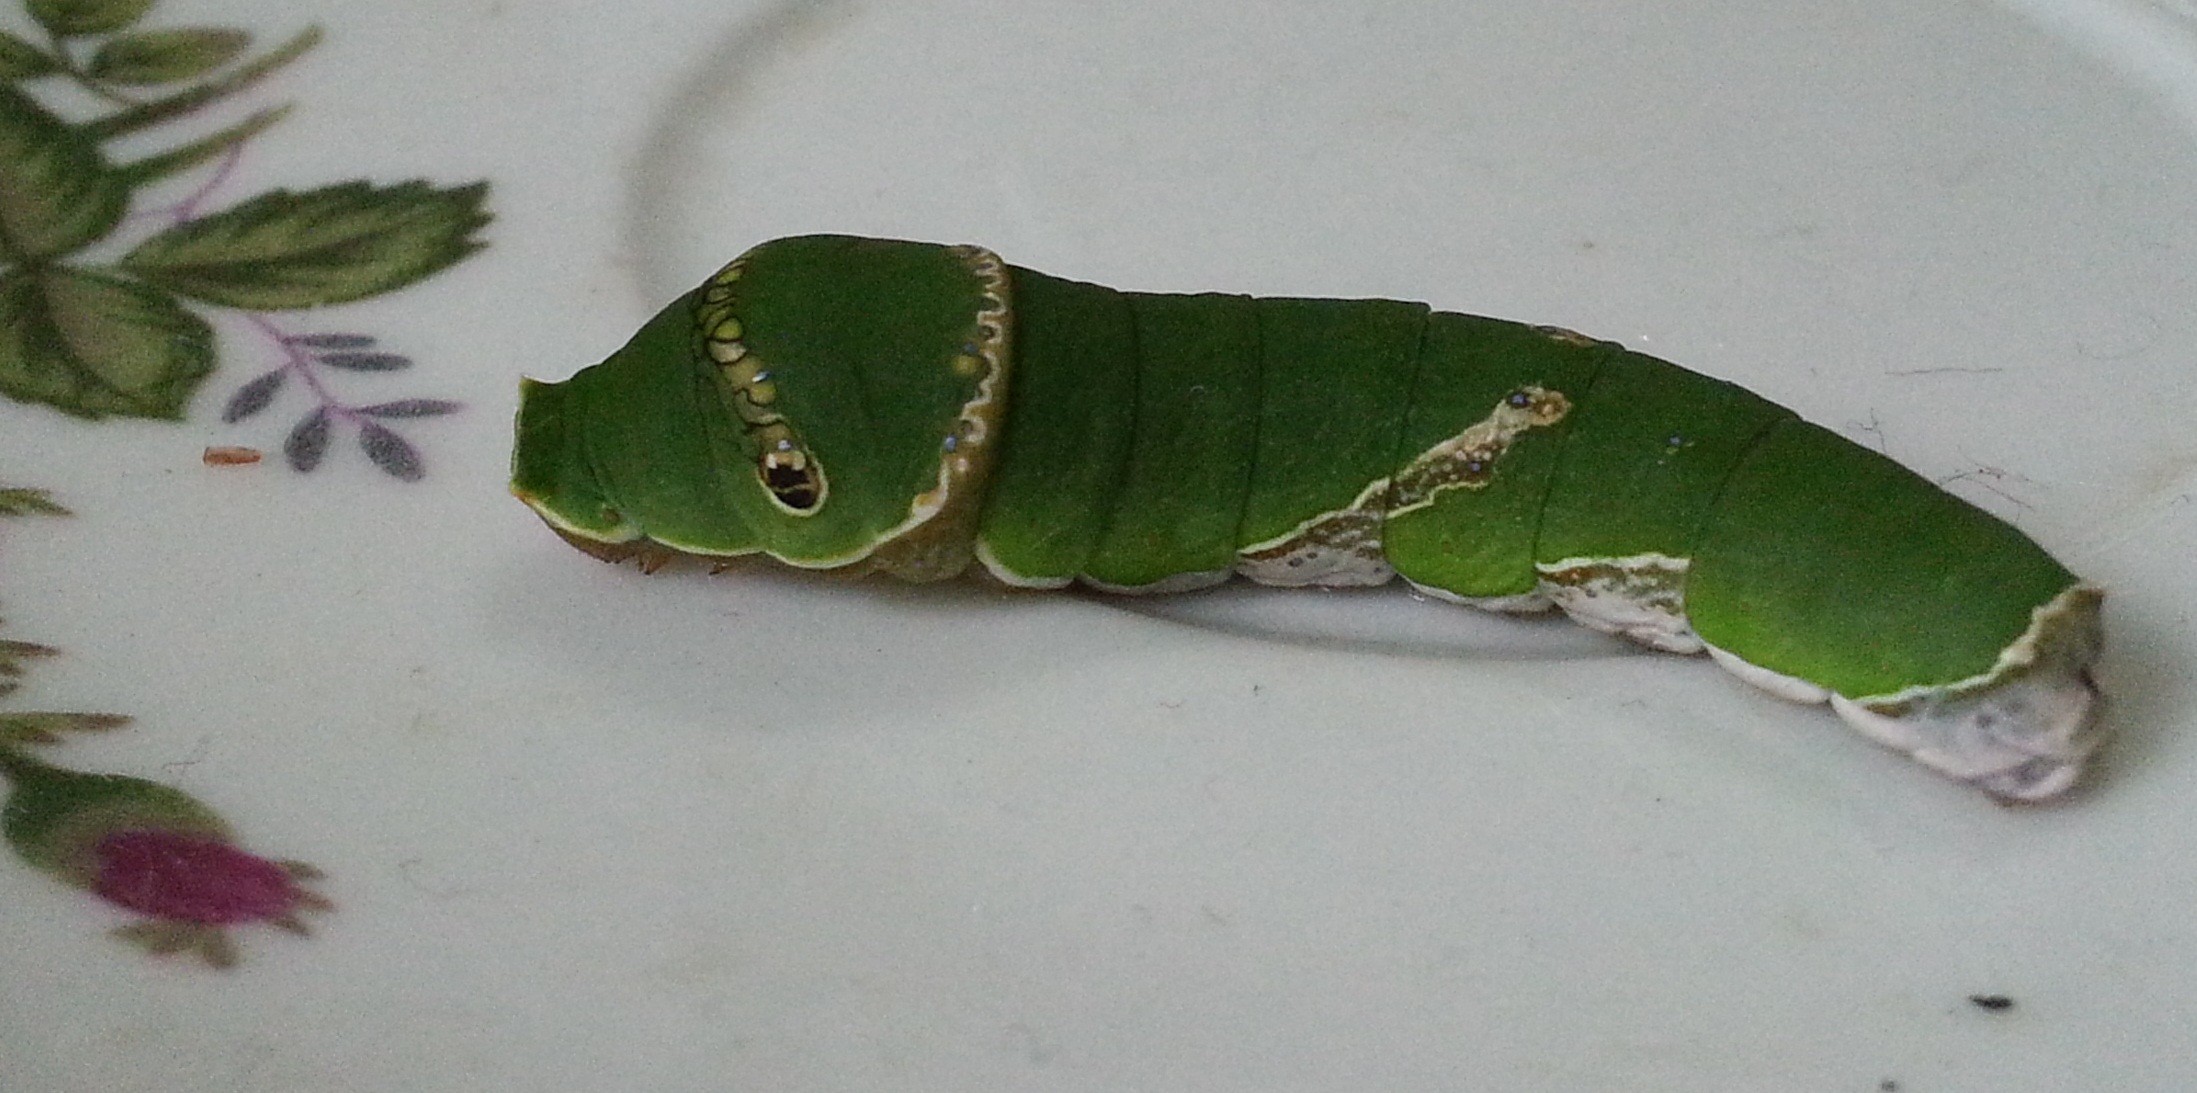 玉带凤蝶低龄幼虫图片图片